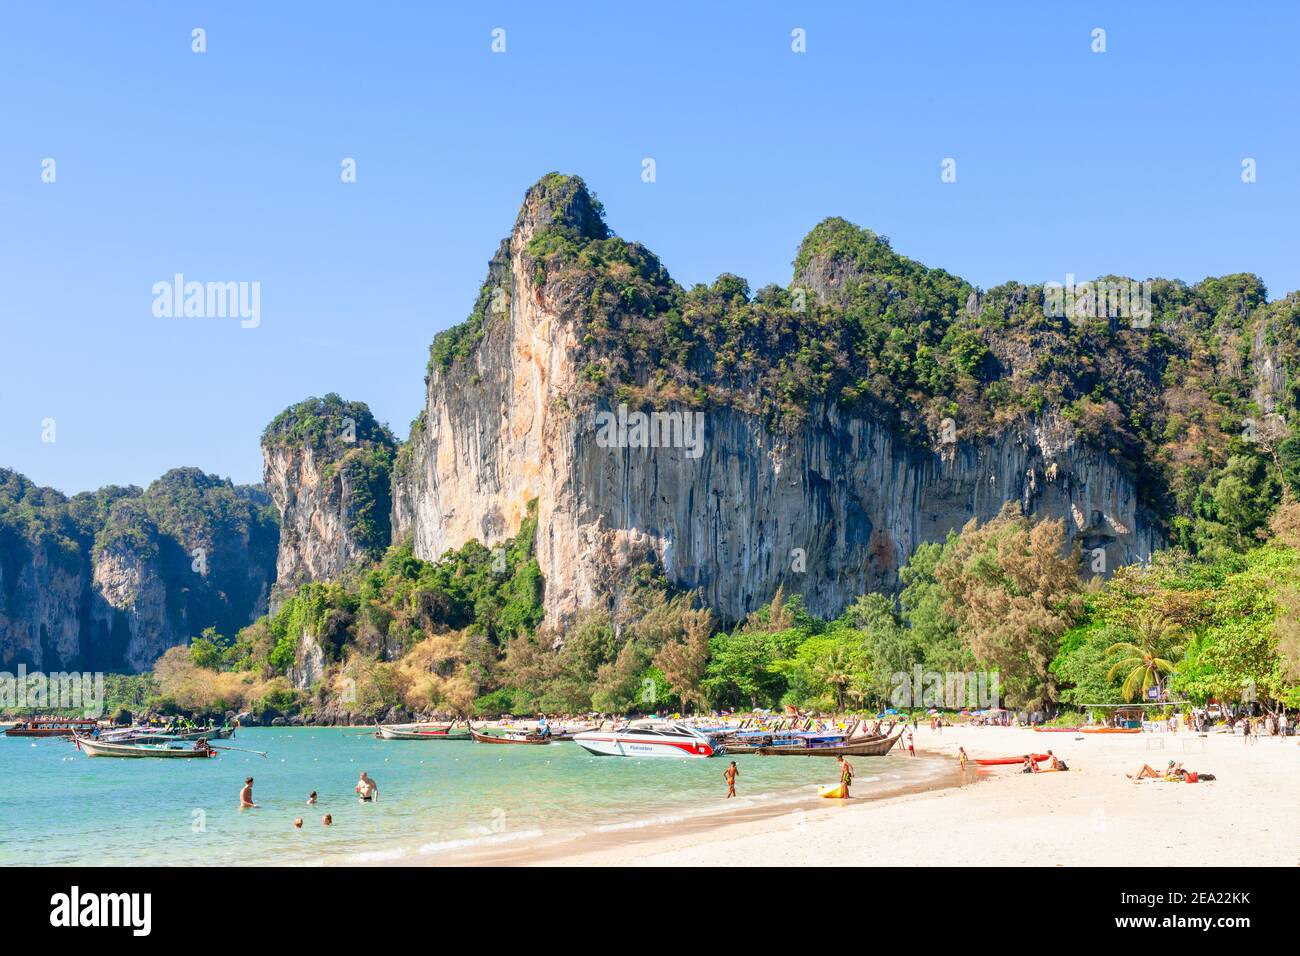 Les vacanciers apprécient la plage et la mer à l'ombre d'une immense formation de rochers sur la plage de Railay, près de Krabi, en Thaïlande Banque D'Images